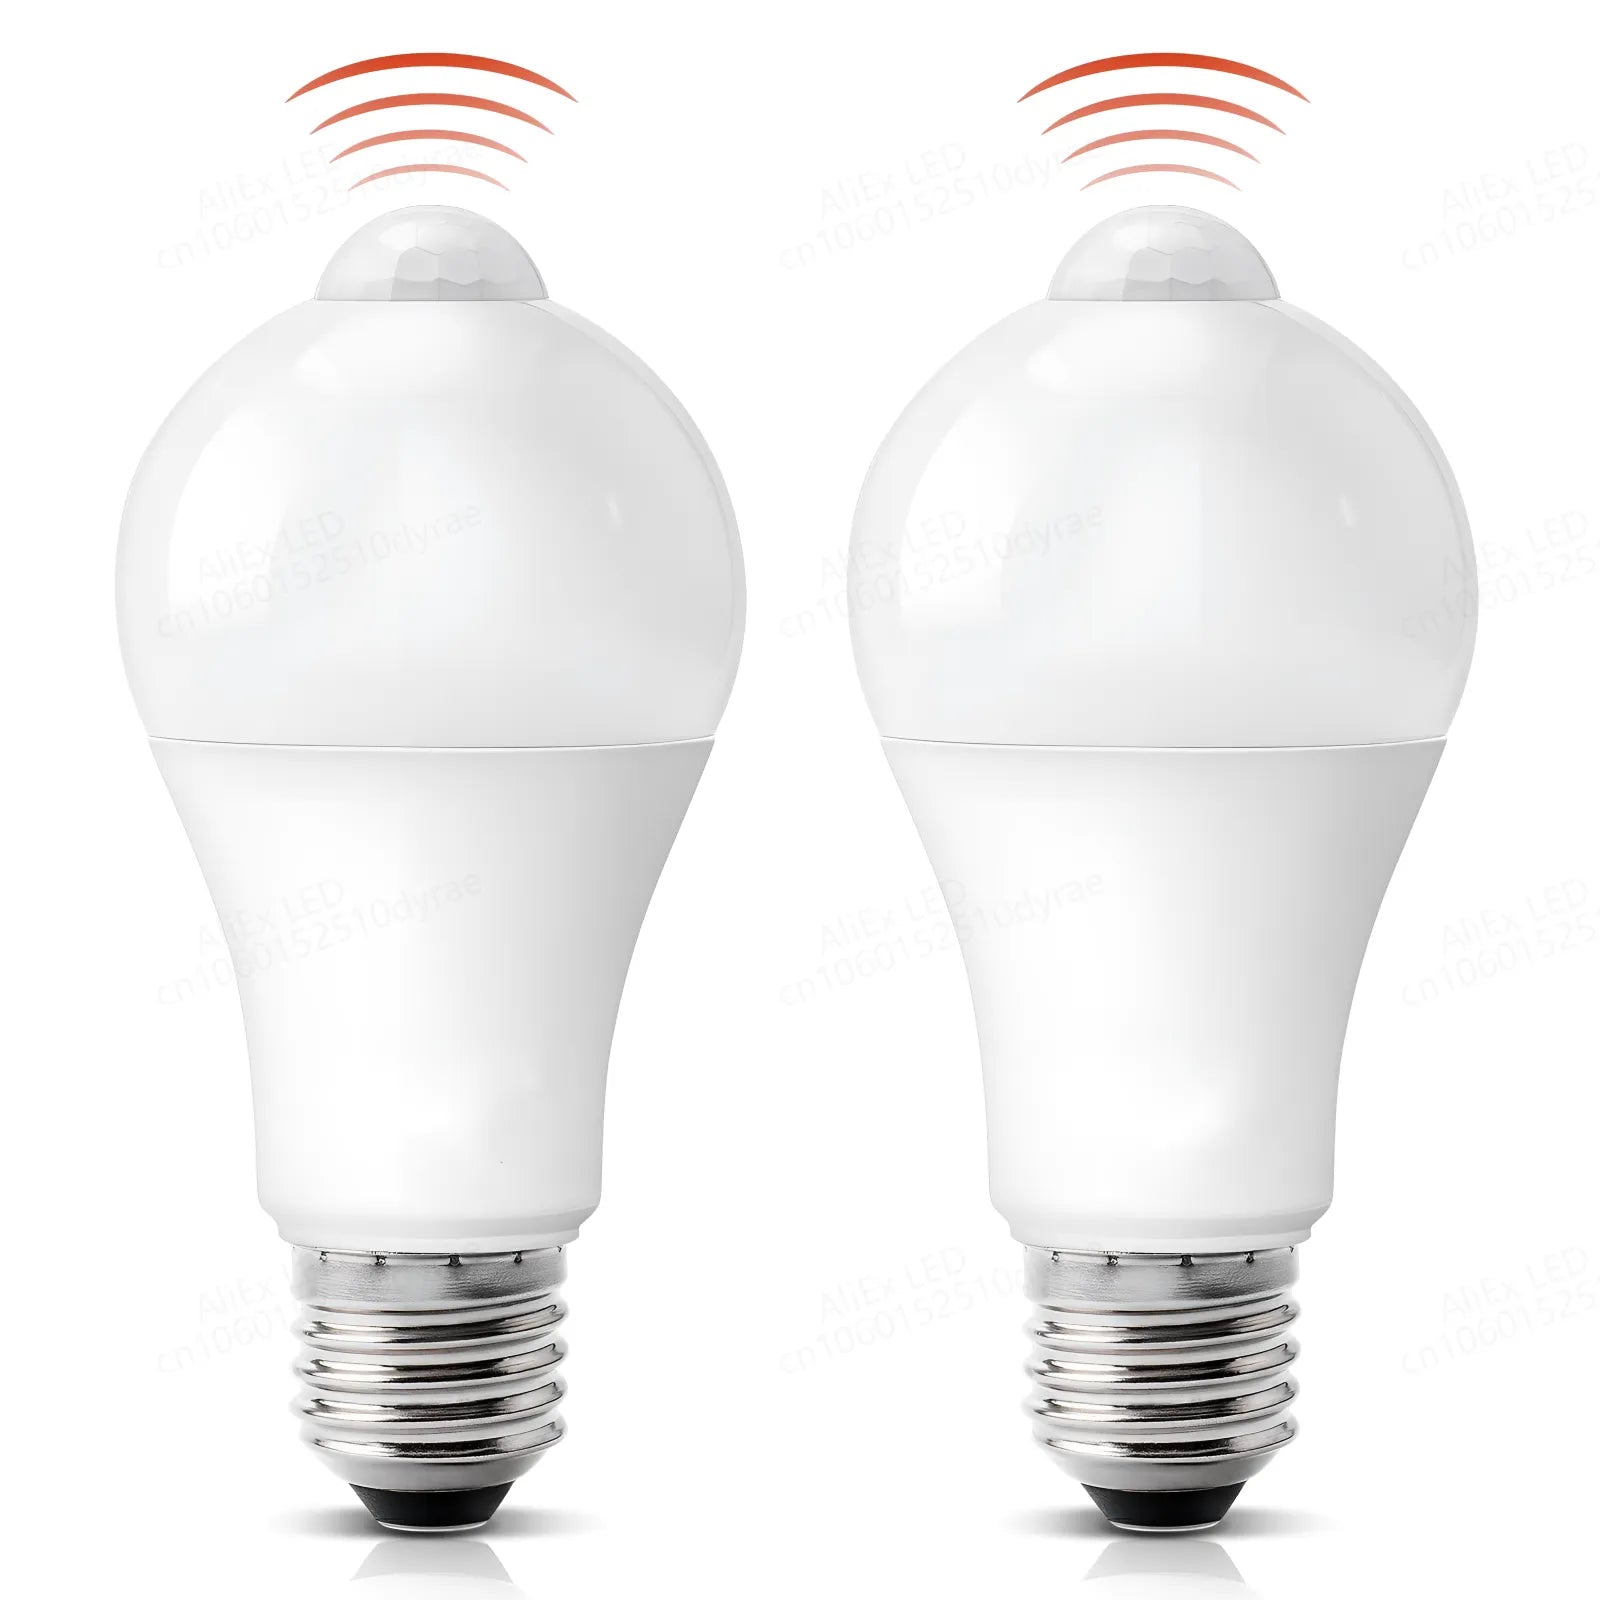 Motion Sensor LED Light Smart Auto Infrared Bulb Energy Saving Home  ourlum.com   